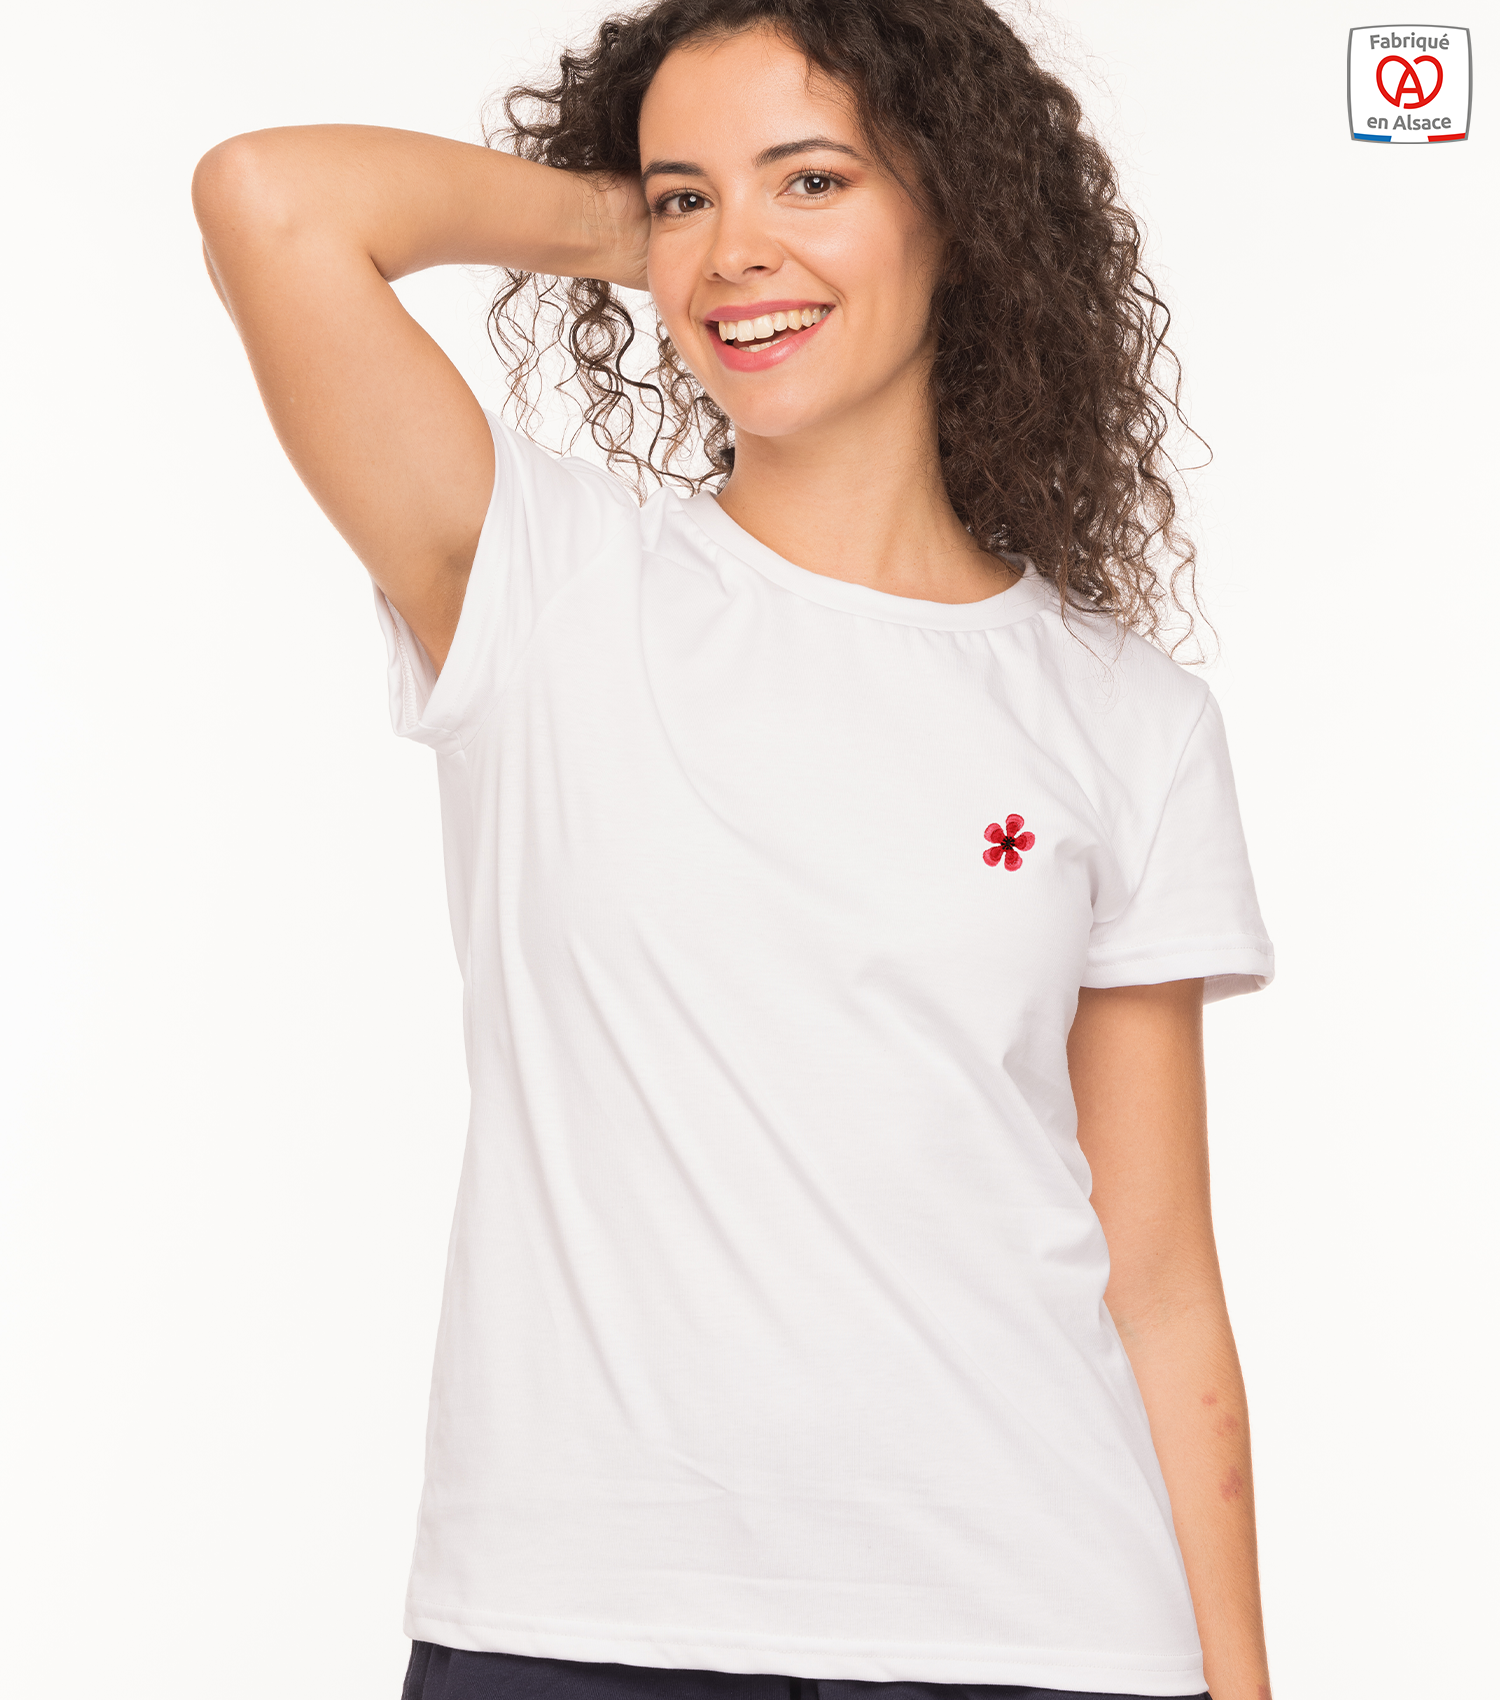 Le T-shirt femme brodé fleur de géranium